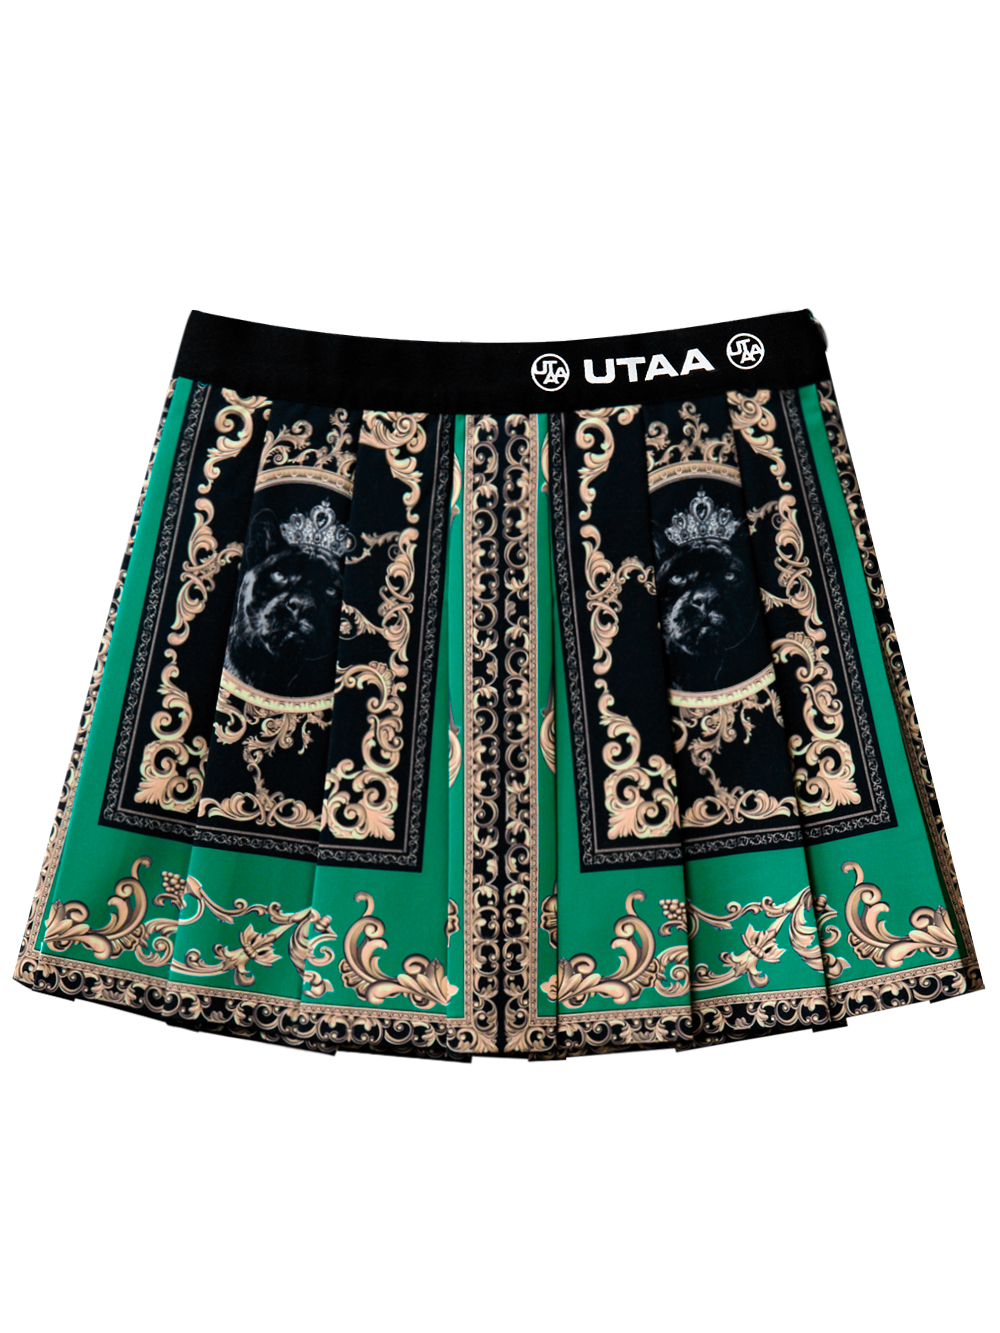 UTAA Neon Baroque Short Skirt : Green (UB2SKF301GN)